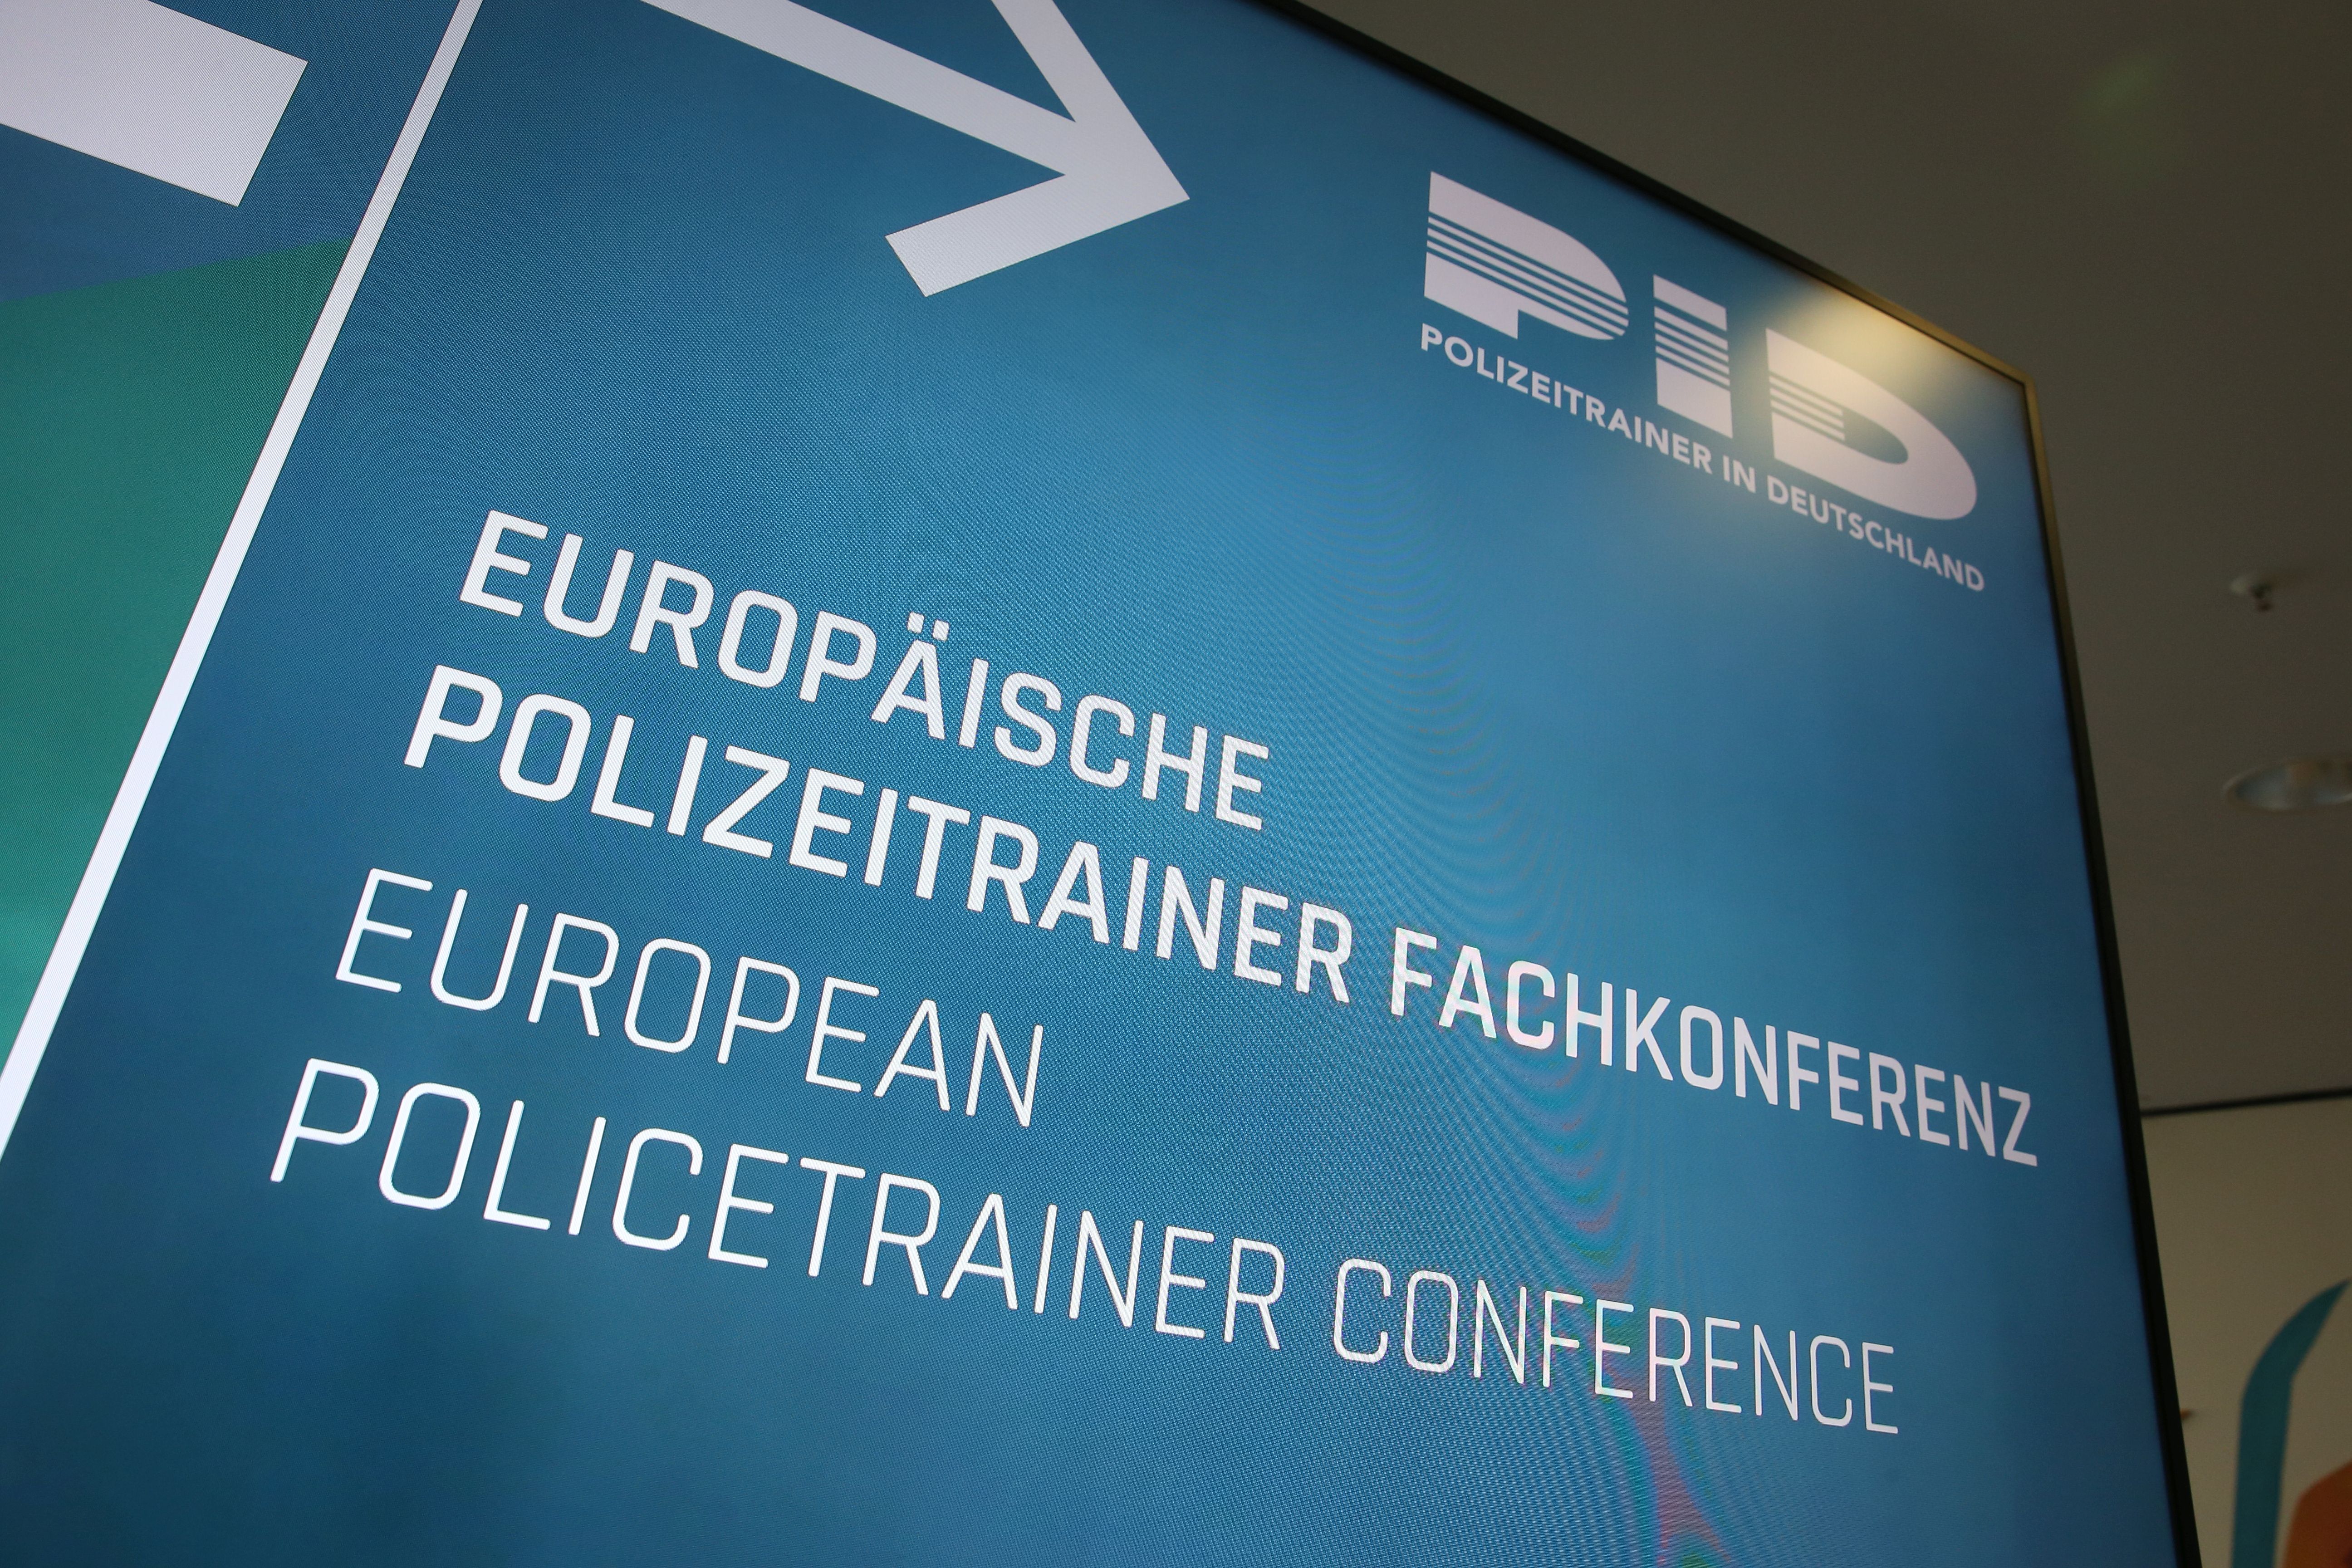 Europäische Polizeitrainer Konferenz